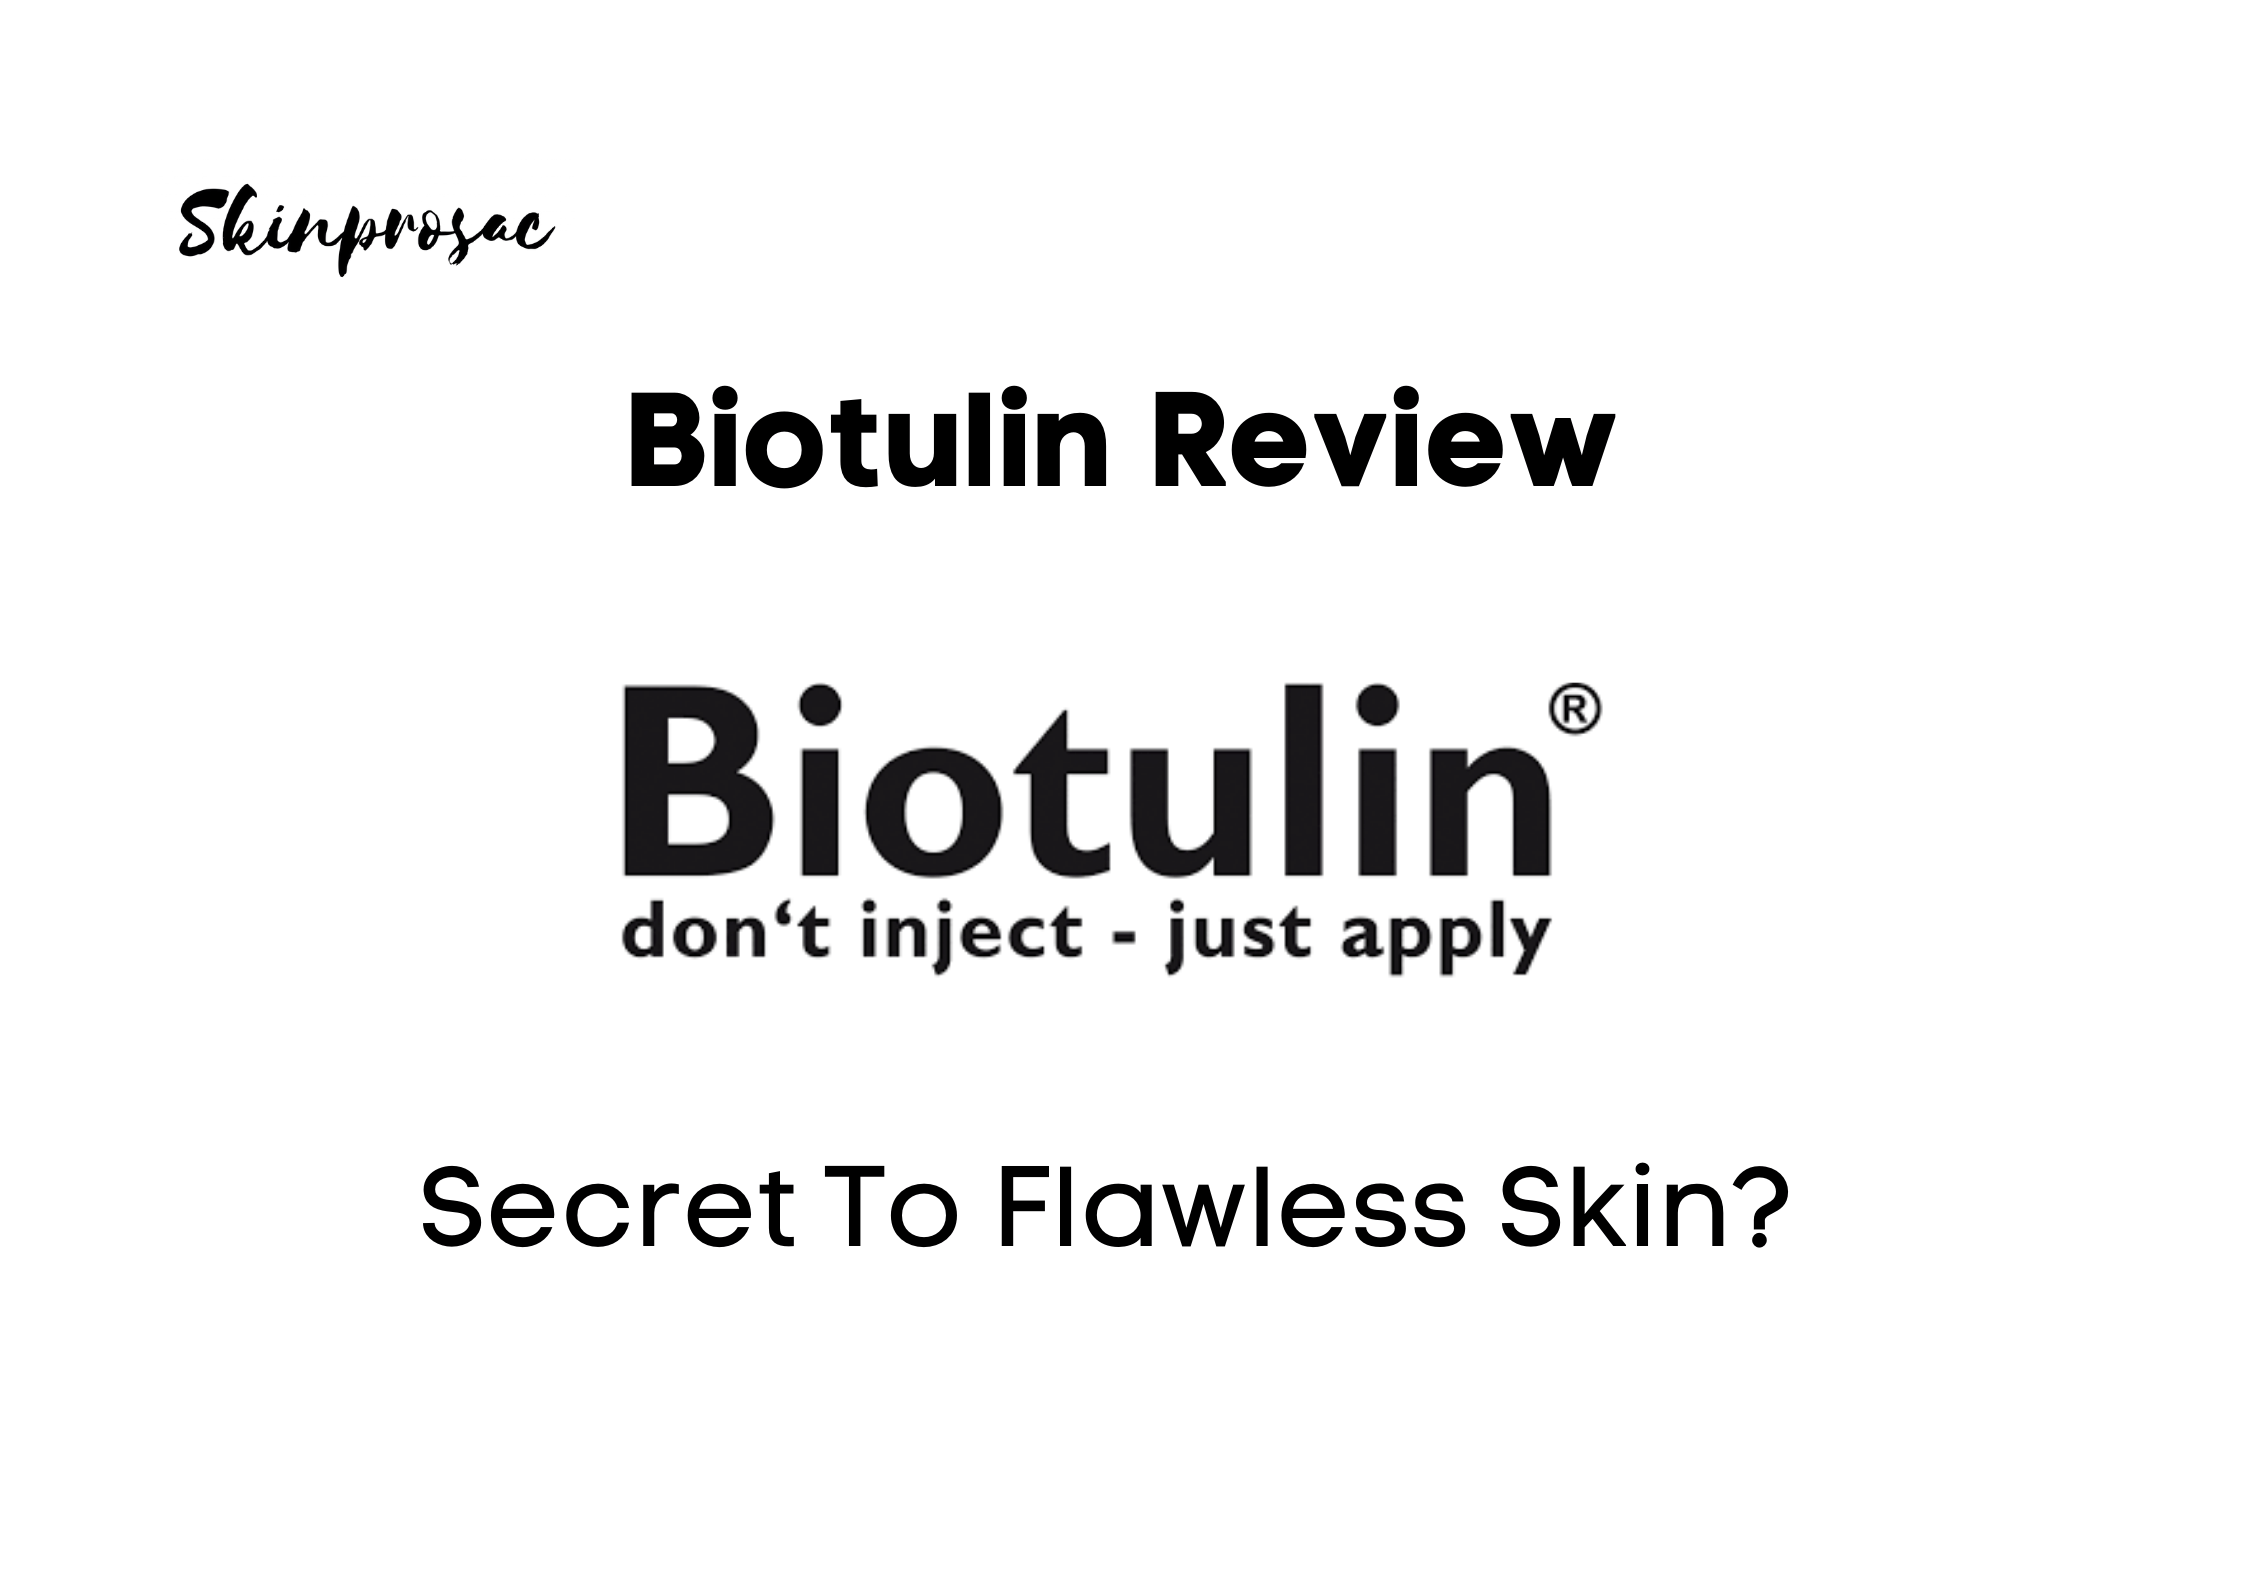 Biotulin Review